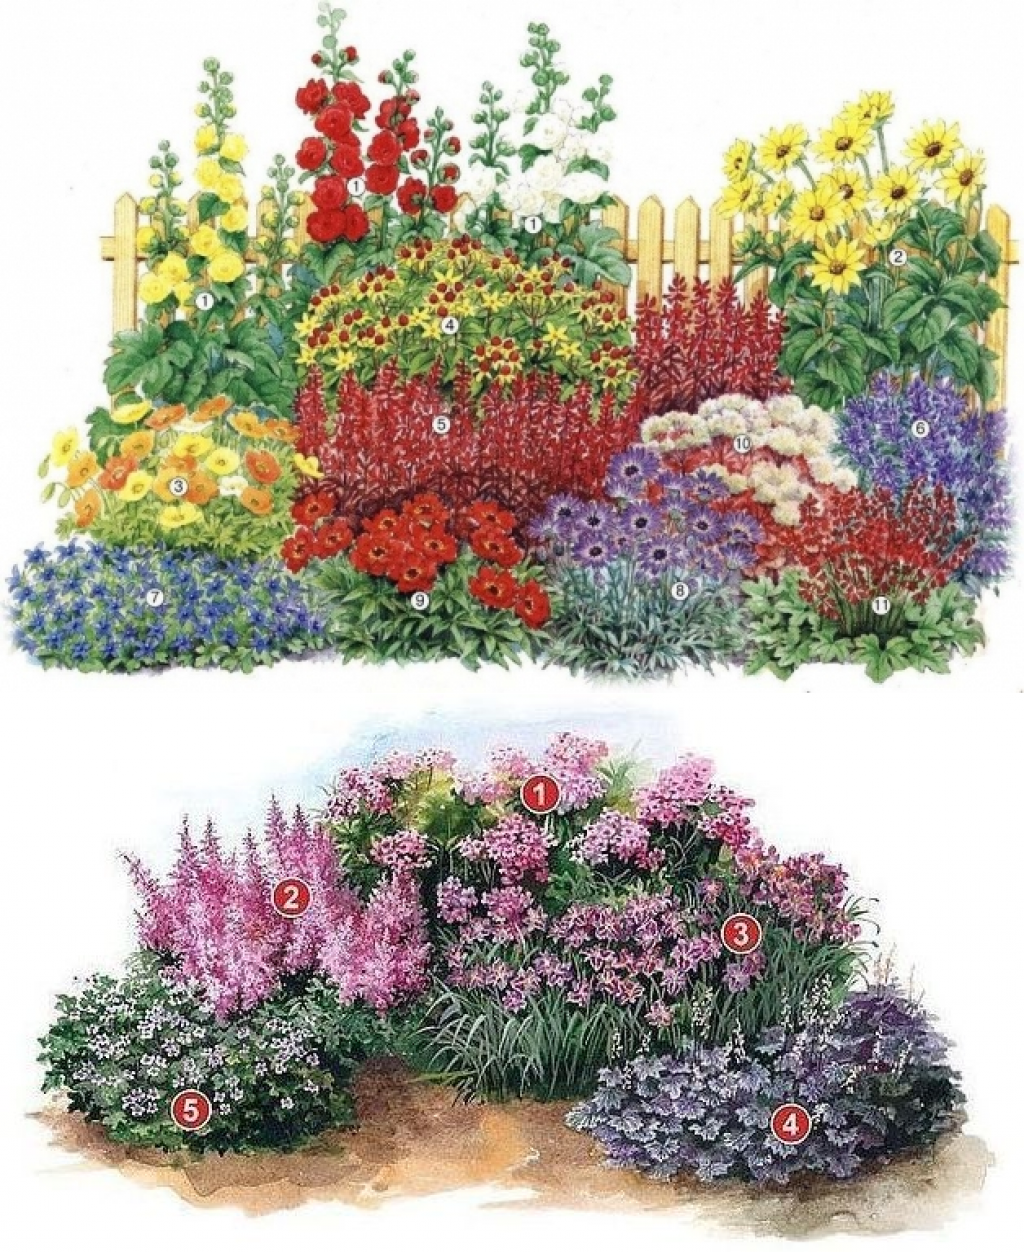 Красивые схемы клумб для дачи: виды цветников, особенности подбора растений